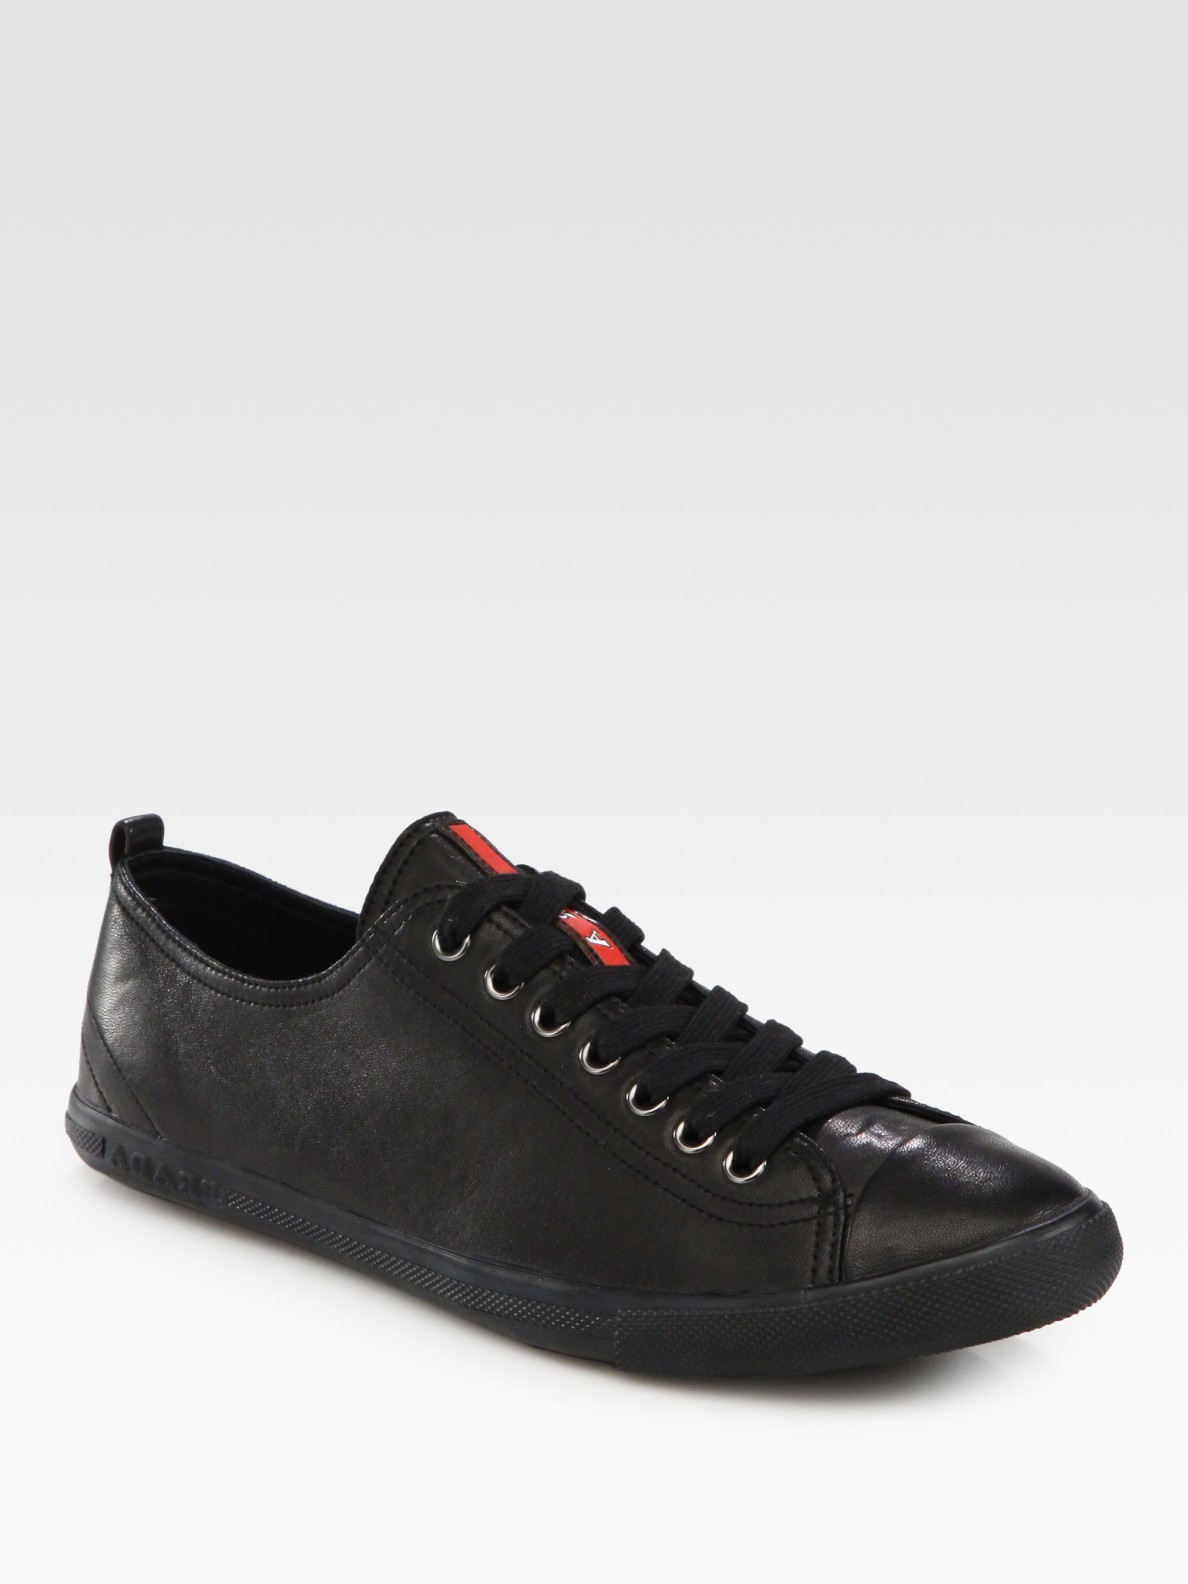 Prada Cap Toe Sneakers in Black for Men - Lyst